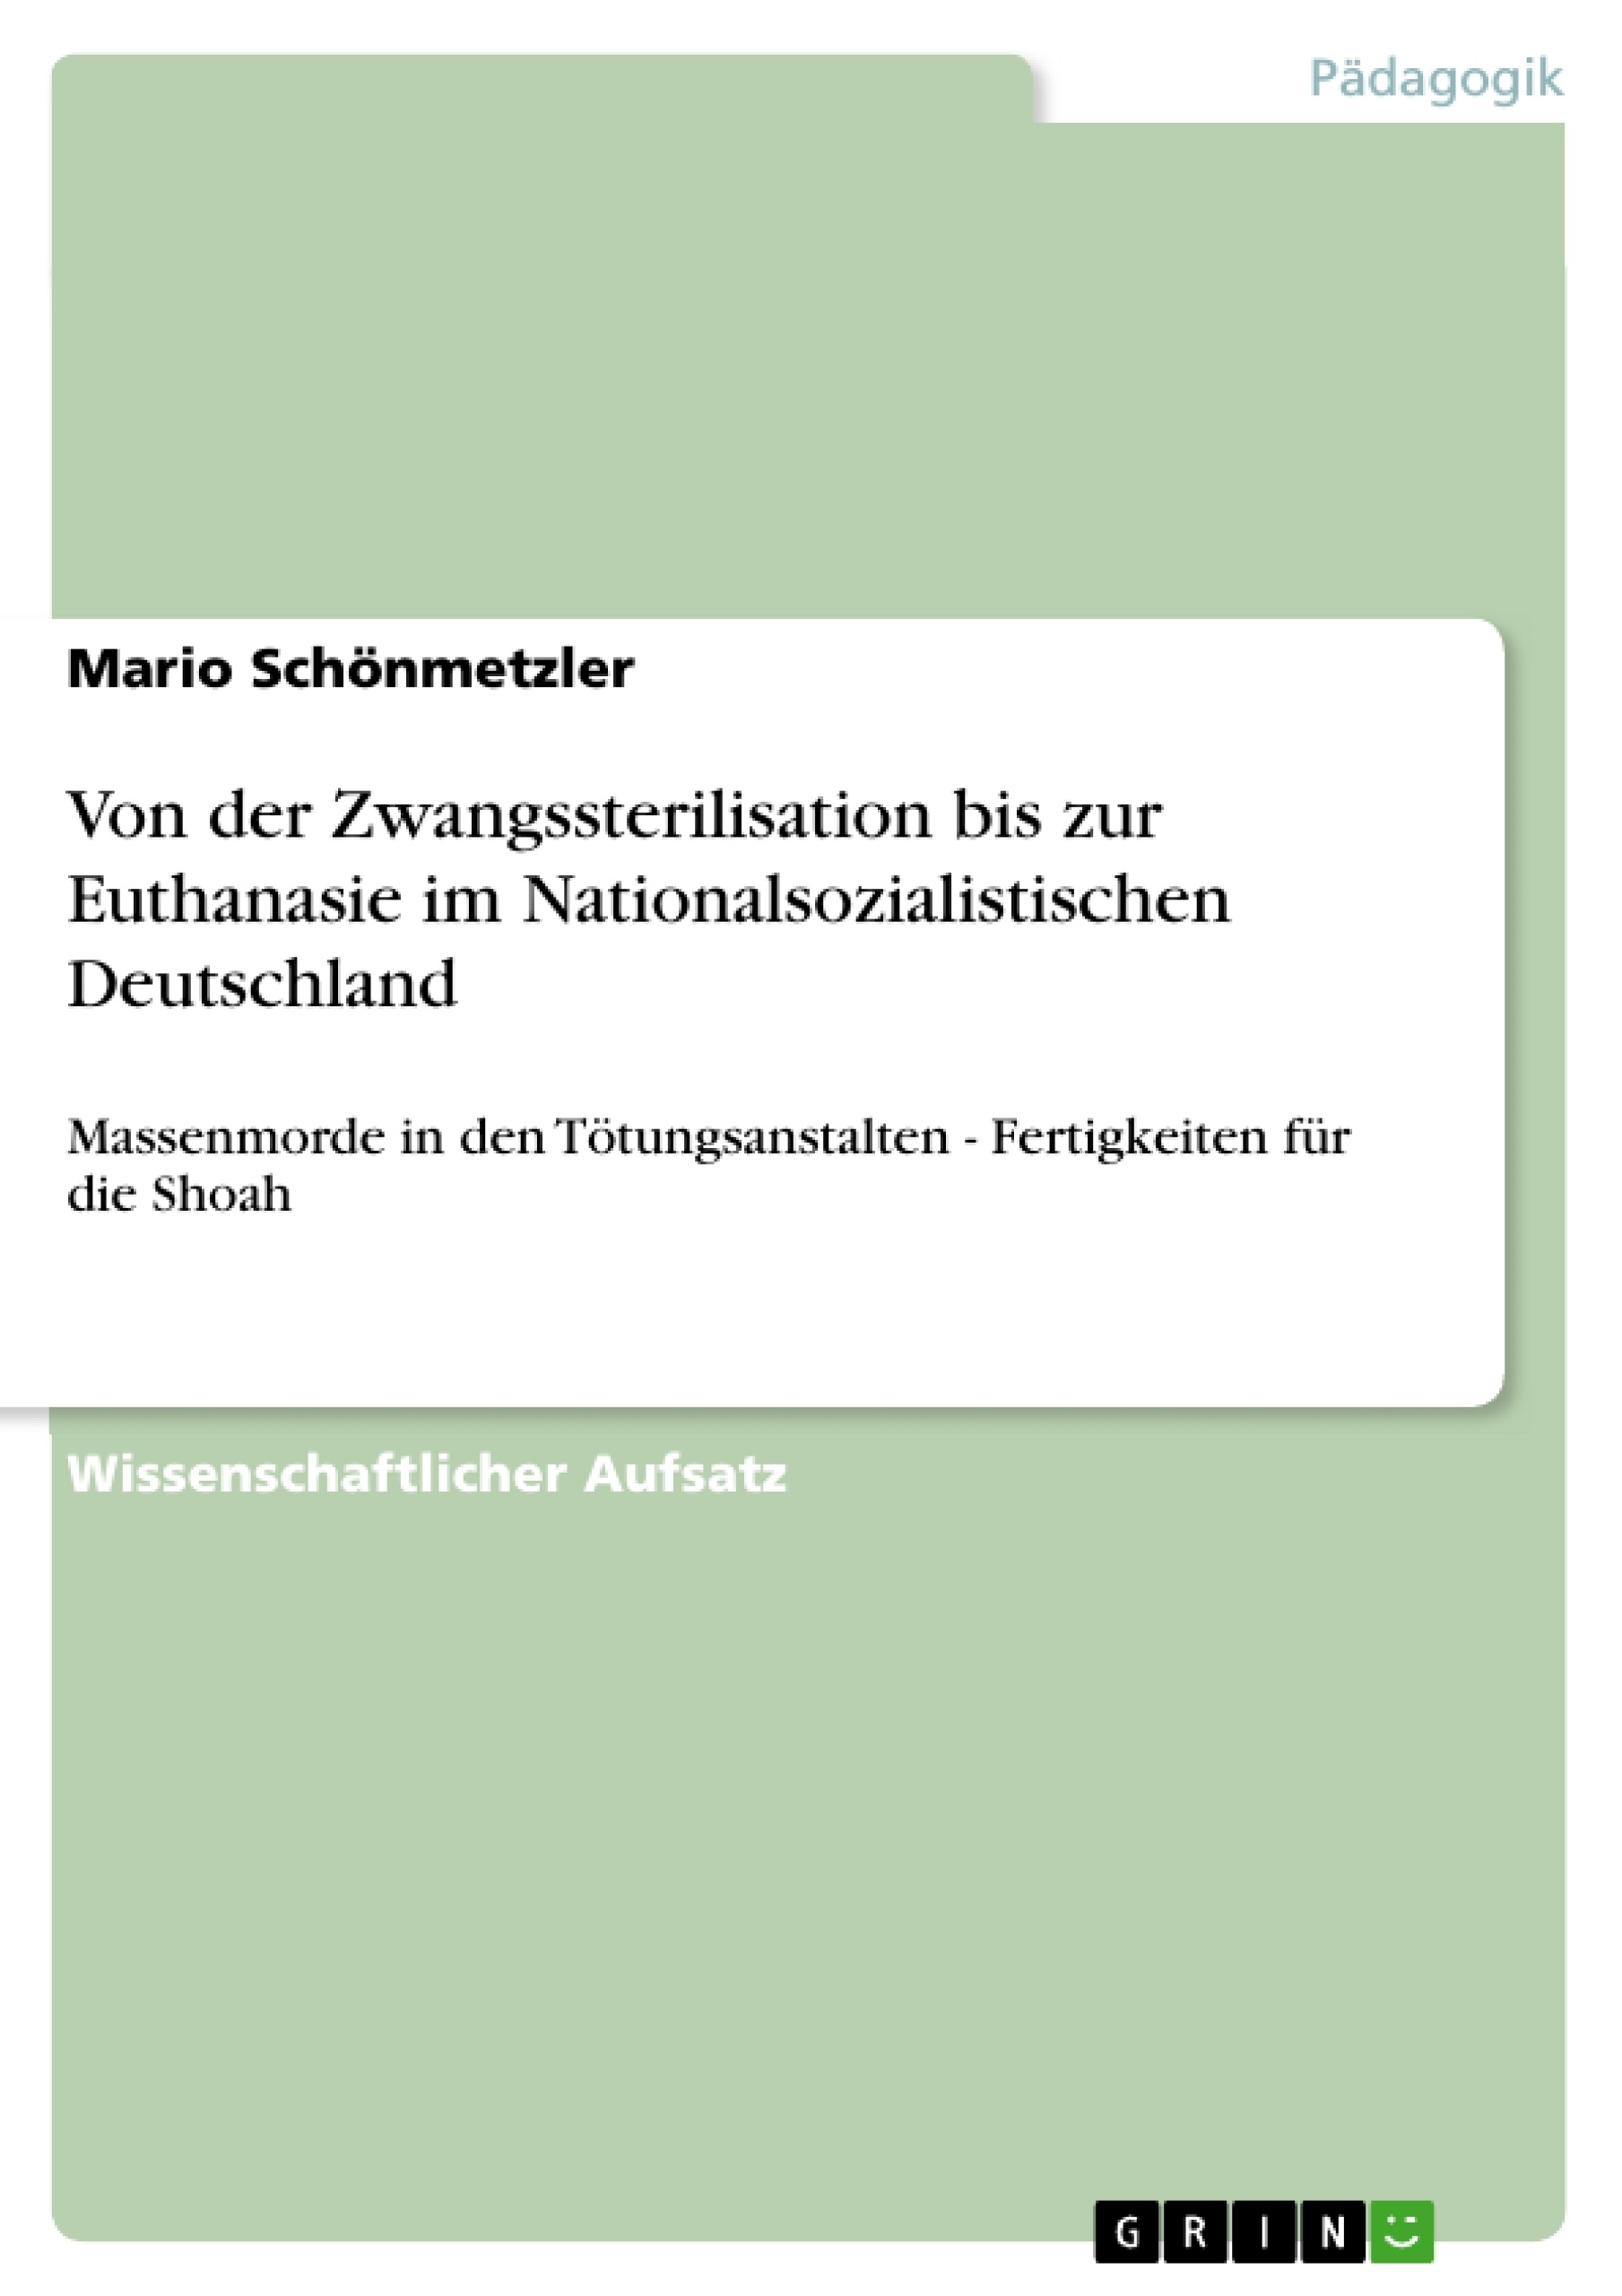 Título: Von der Zwangssterilisation bis zur Euthanasie im Nationalsozialistischen Deutschland